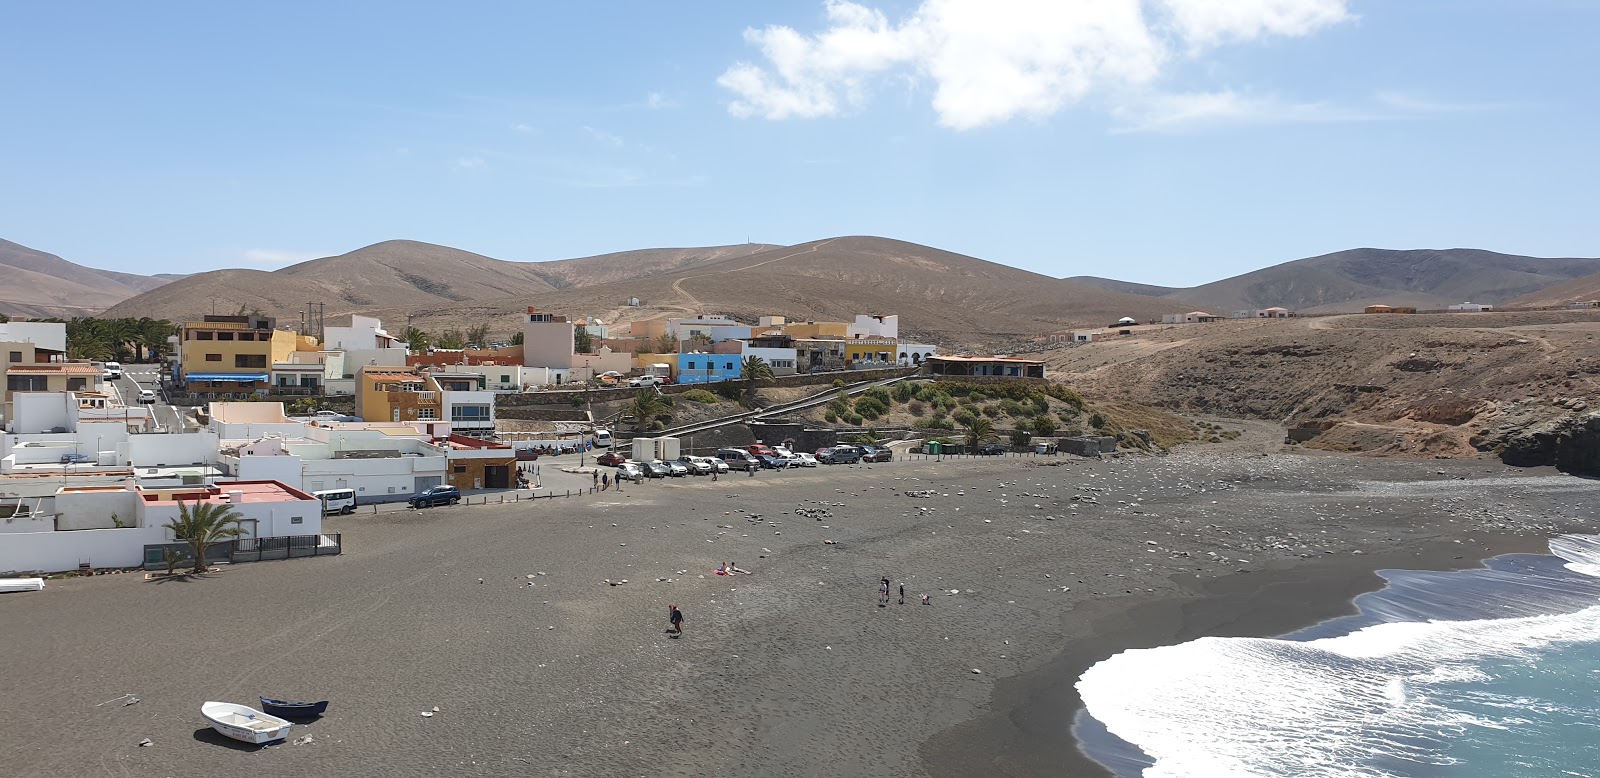 Playa de Ajui'in fotoğrafı küçük koy ile birlikte